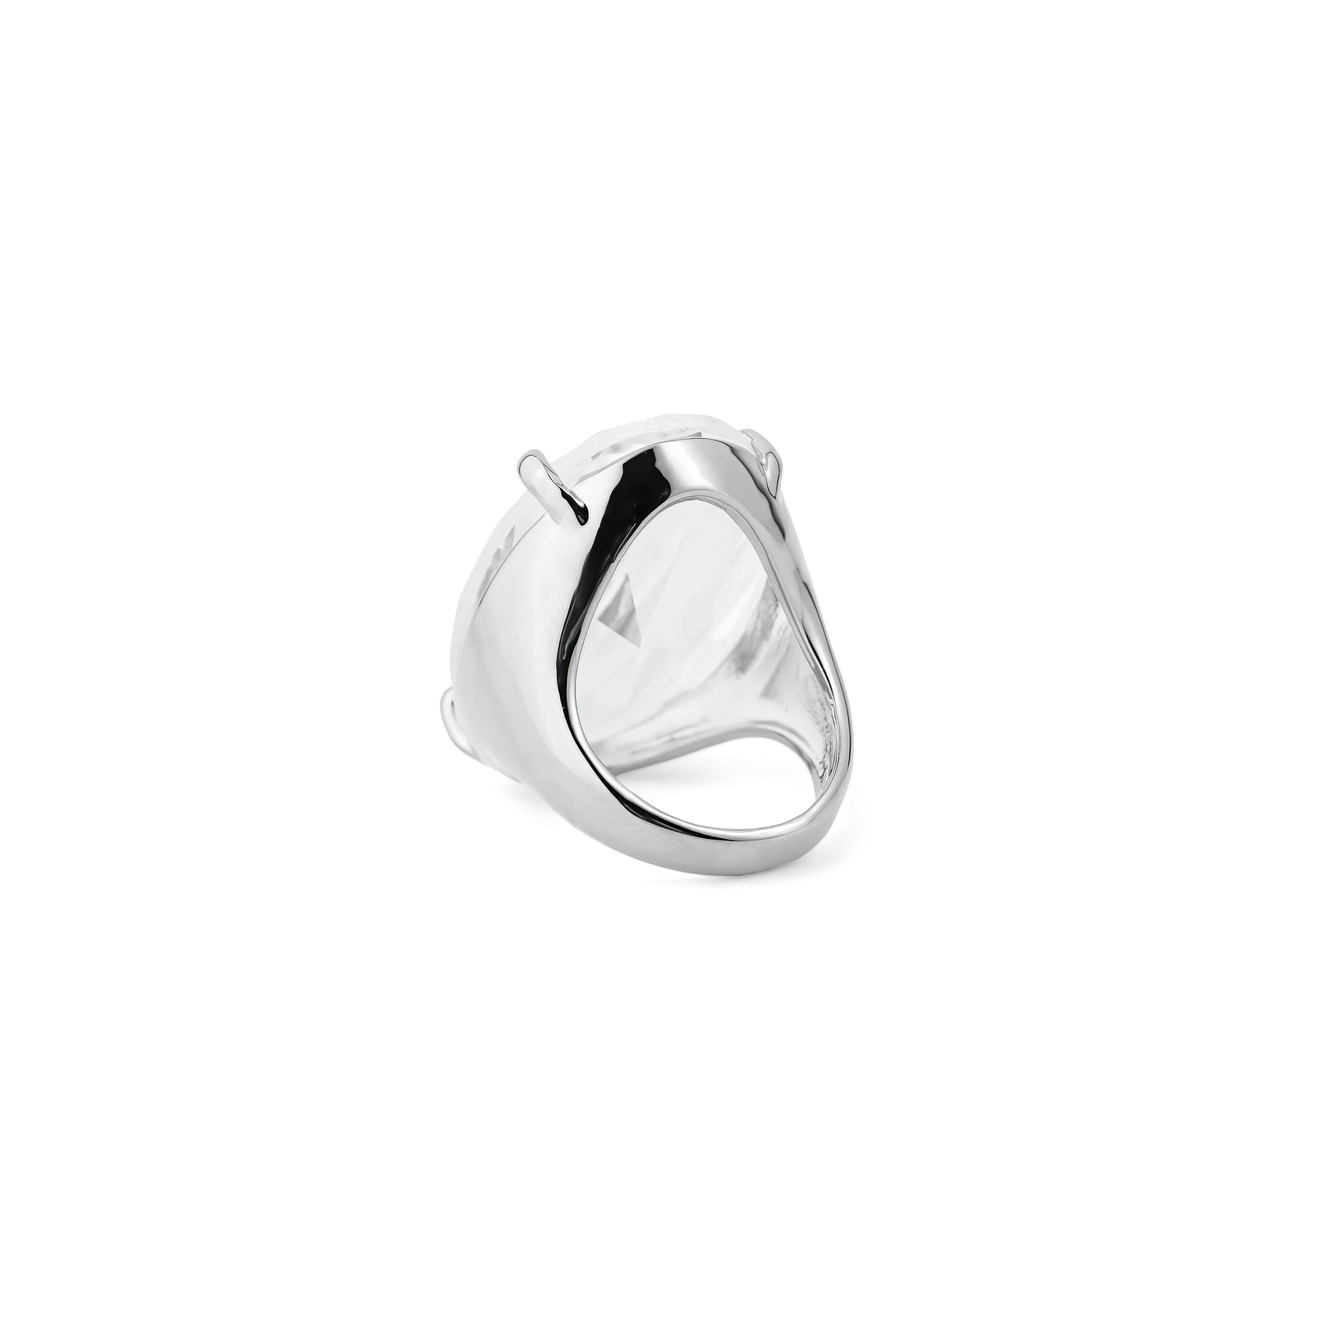 Herald Percy Серебристое кольцо с овальным кристаллом herald percy серебристое фигурное кольцо с черным сердцем